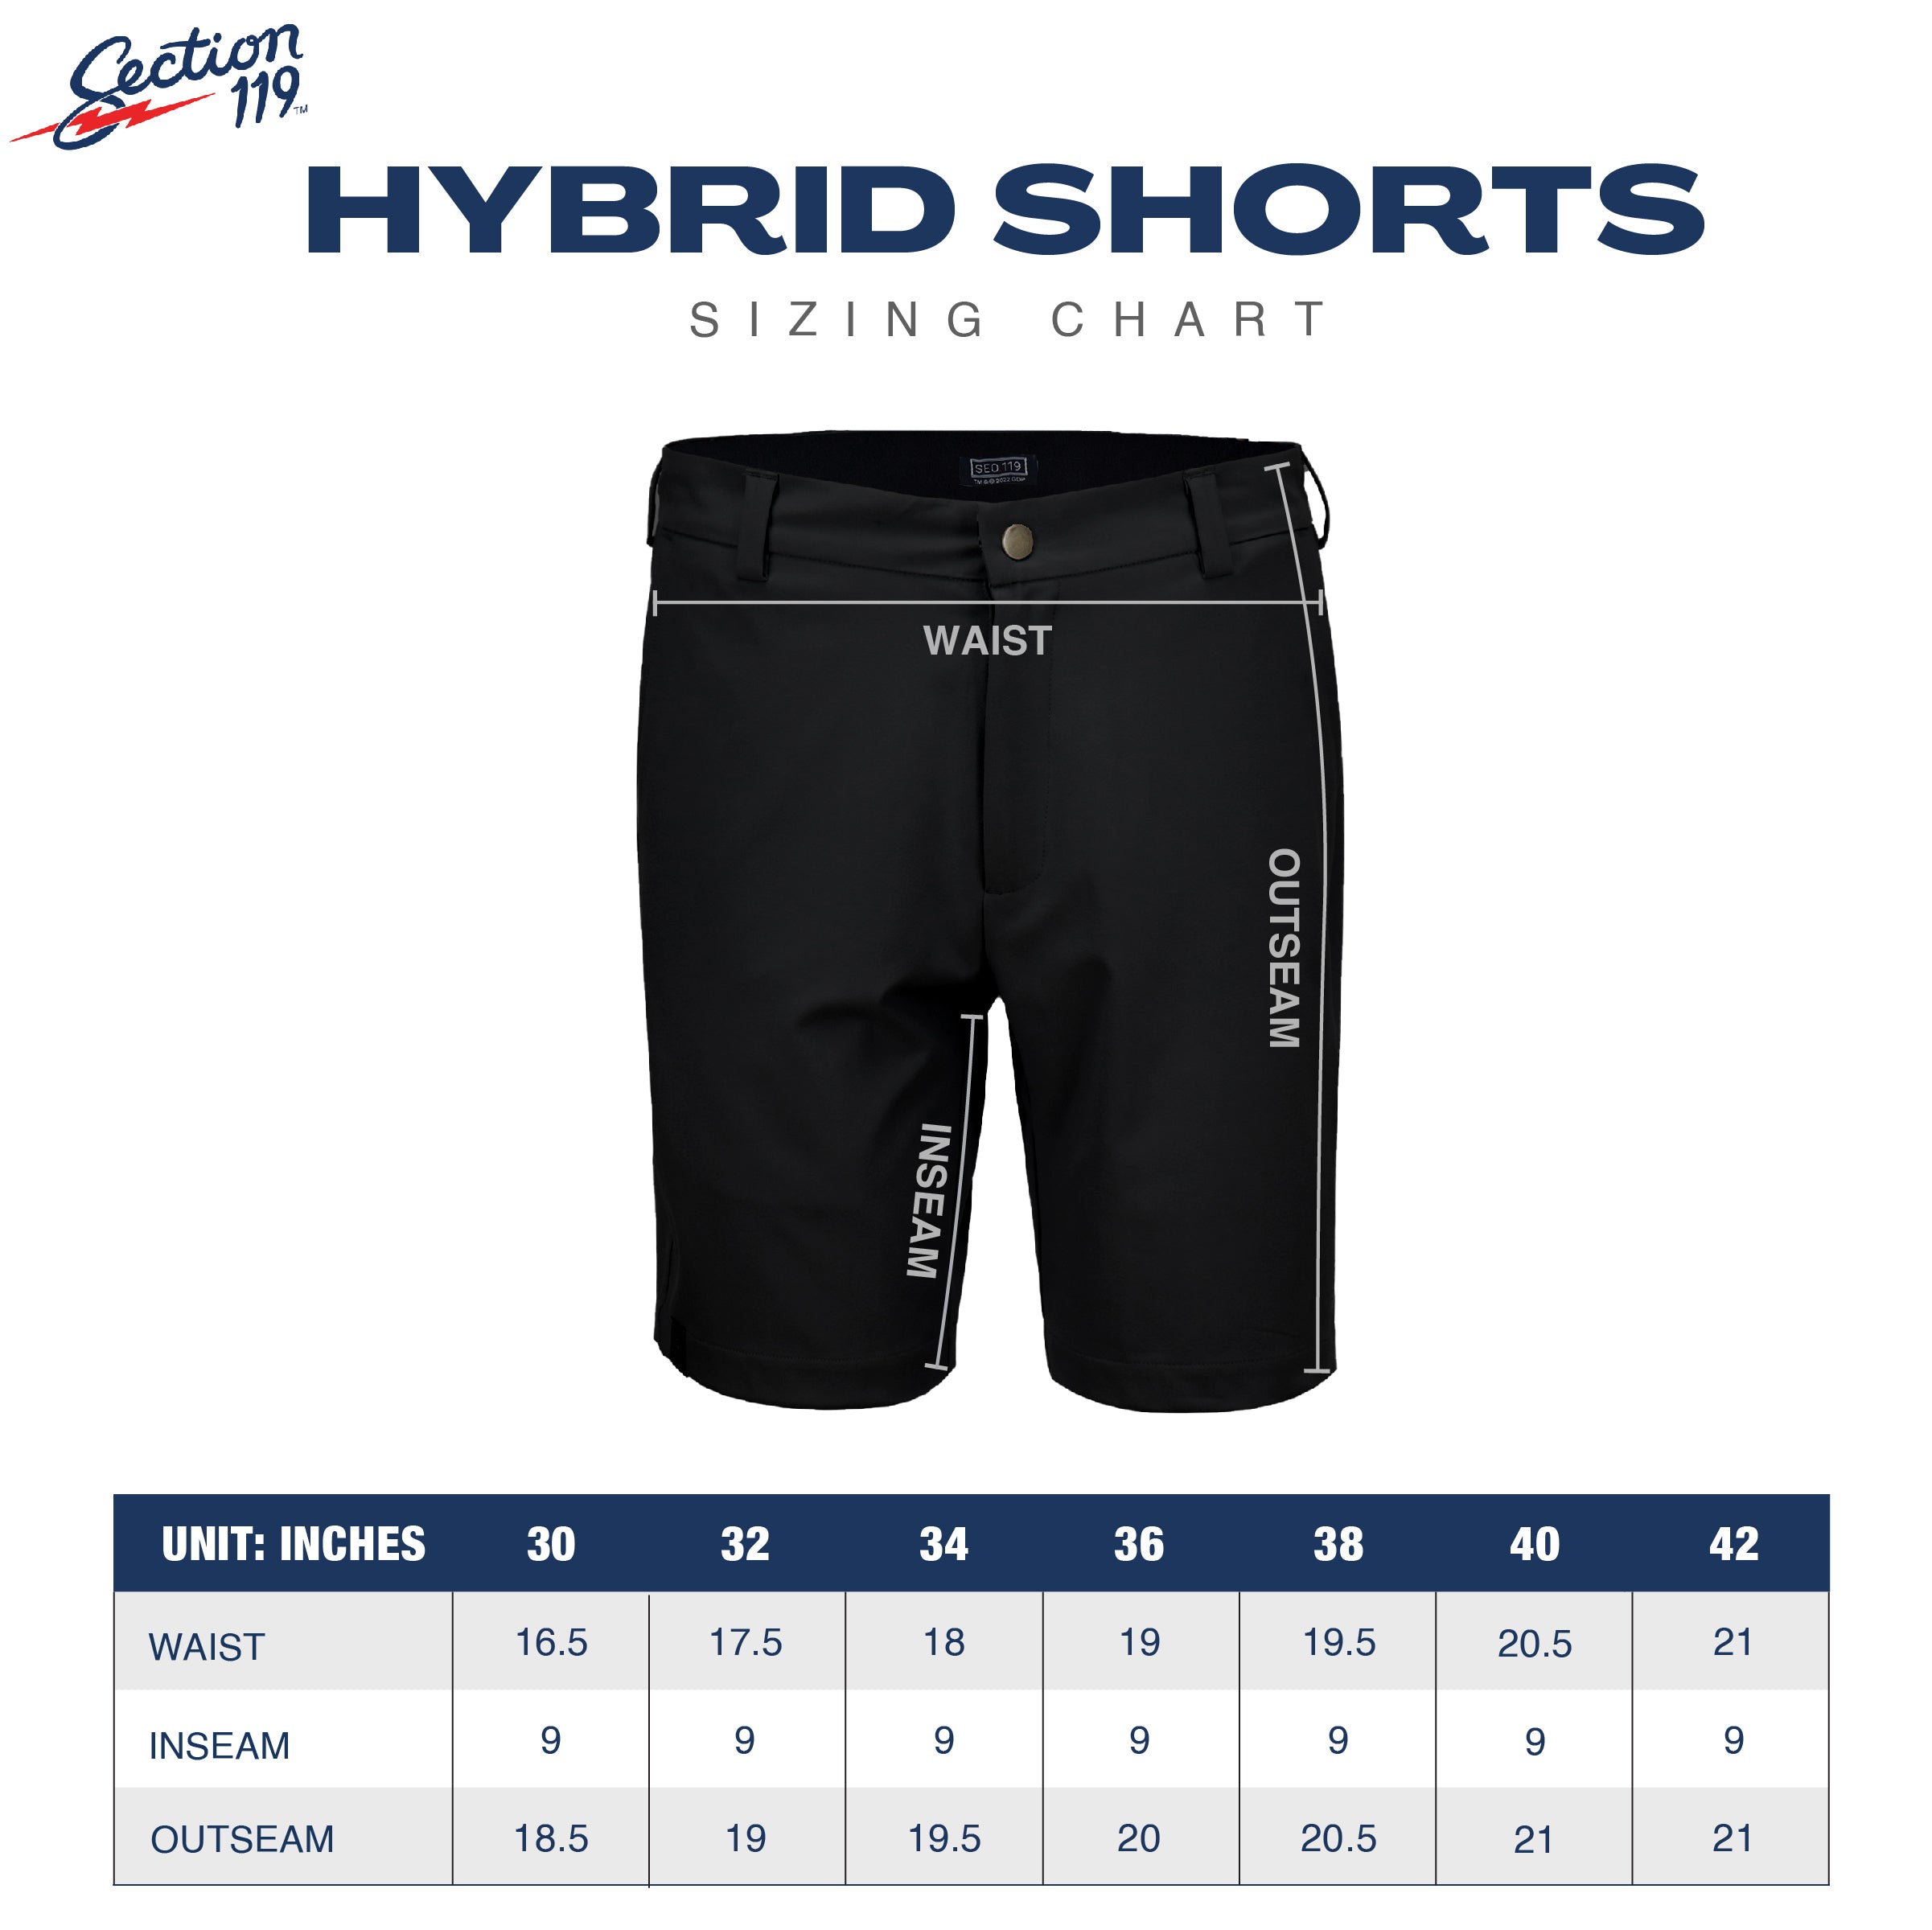 Phish Elevated Hybrid Shorts Grey - Section 119